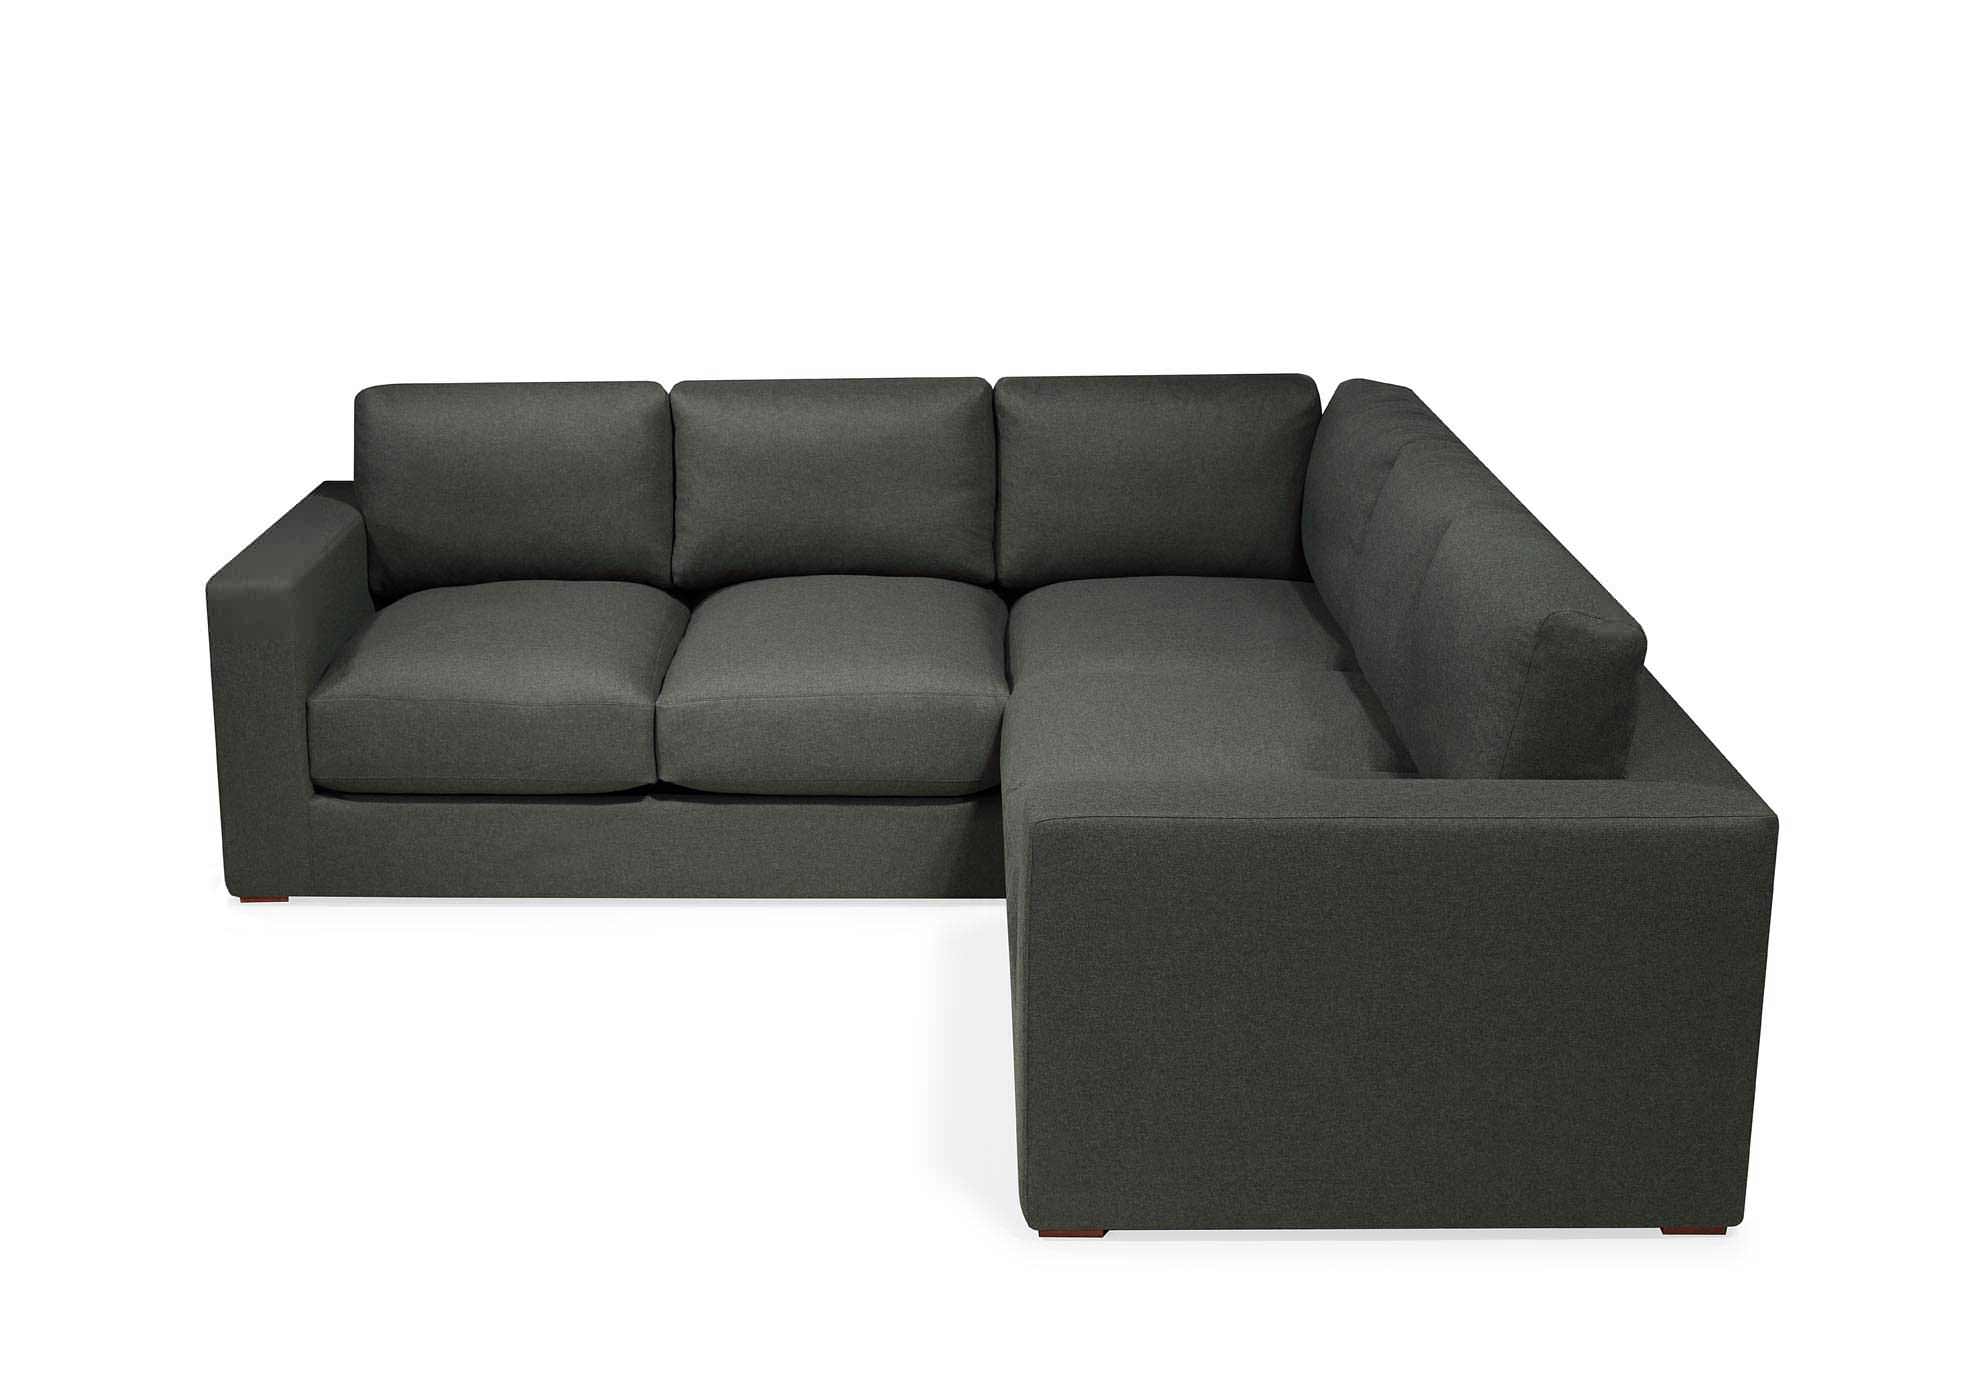 Sumptuous corner sofa